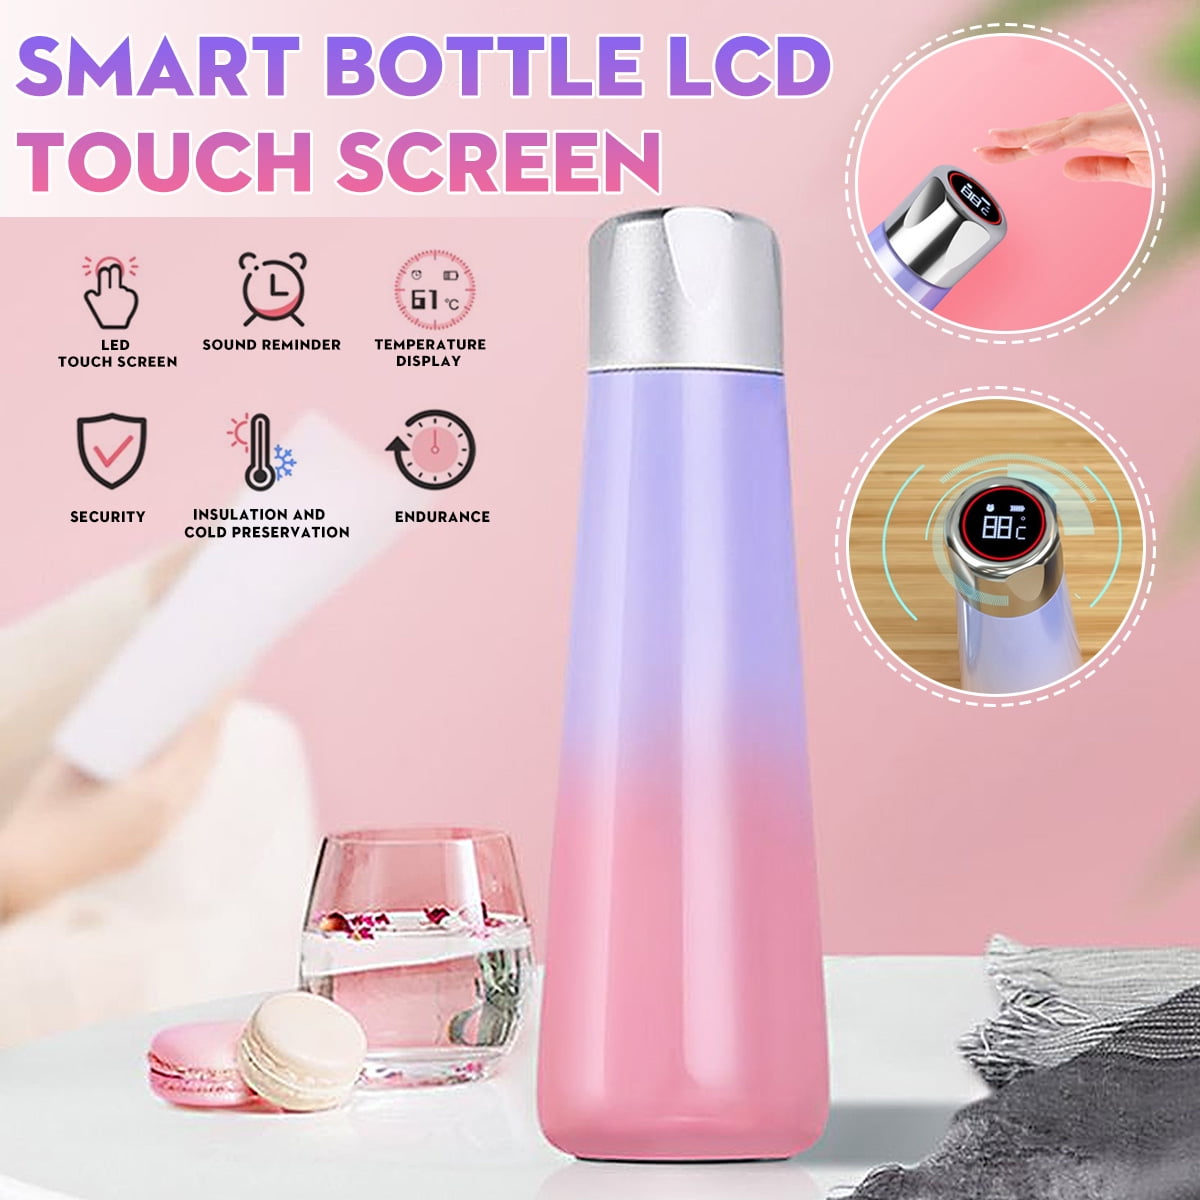 smart bottle